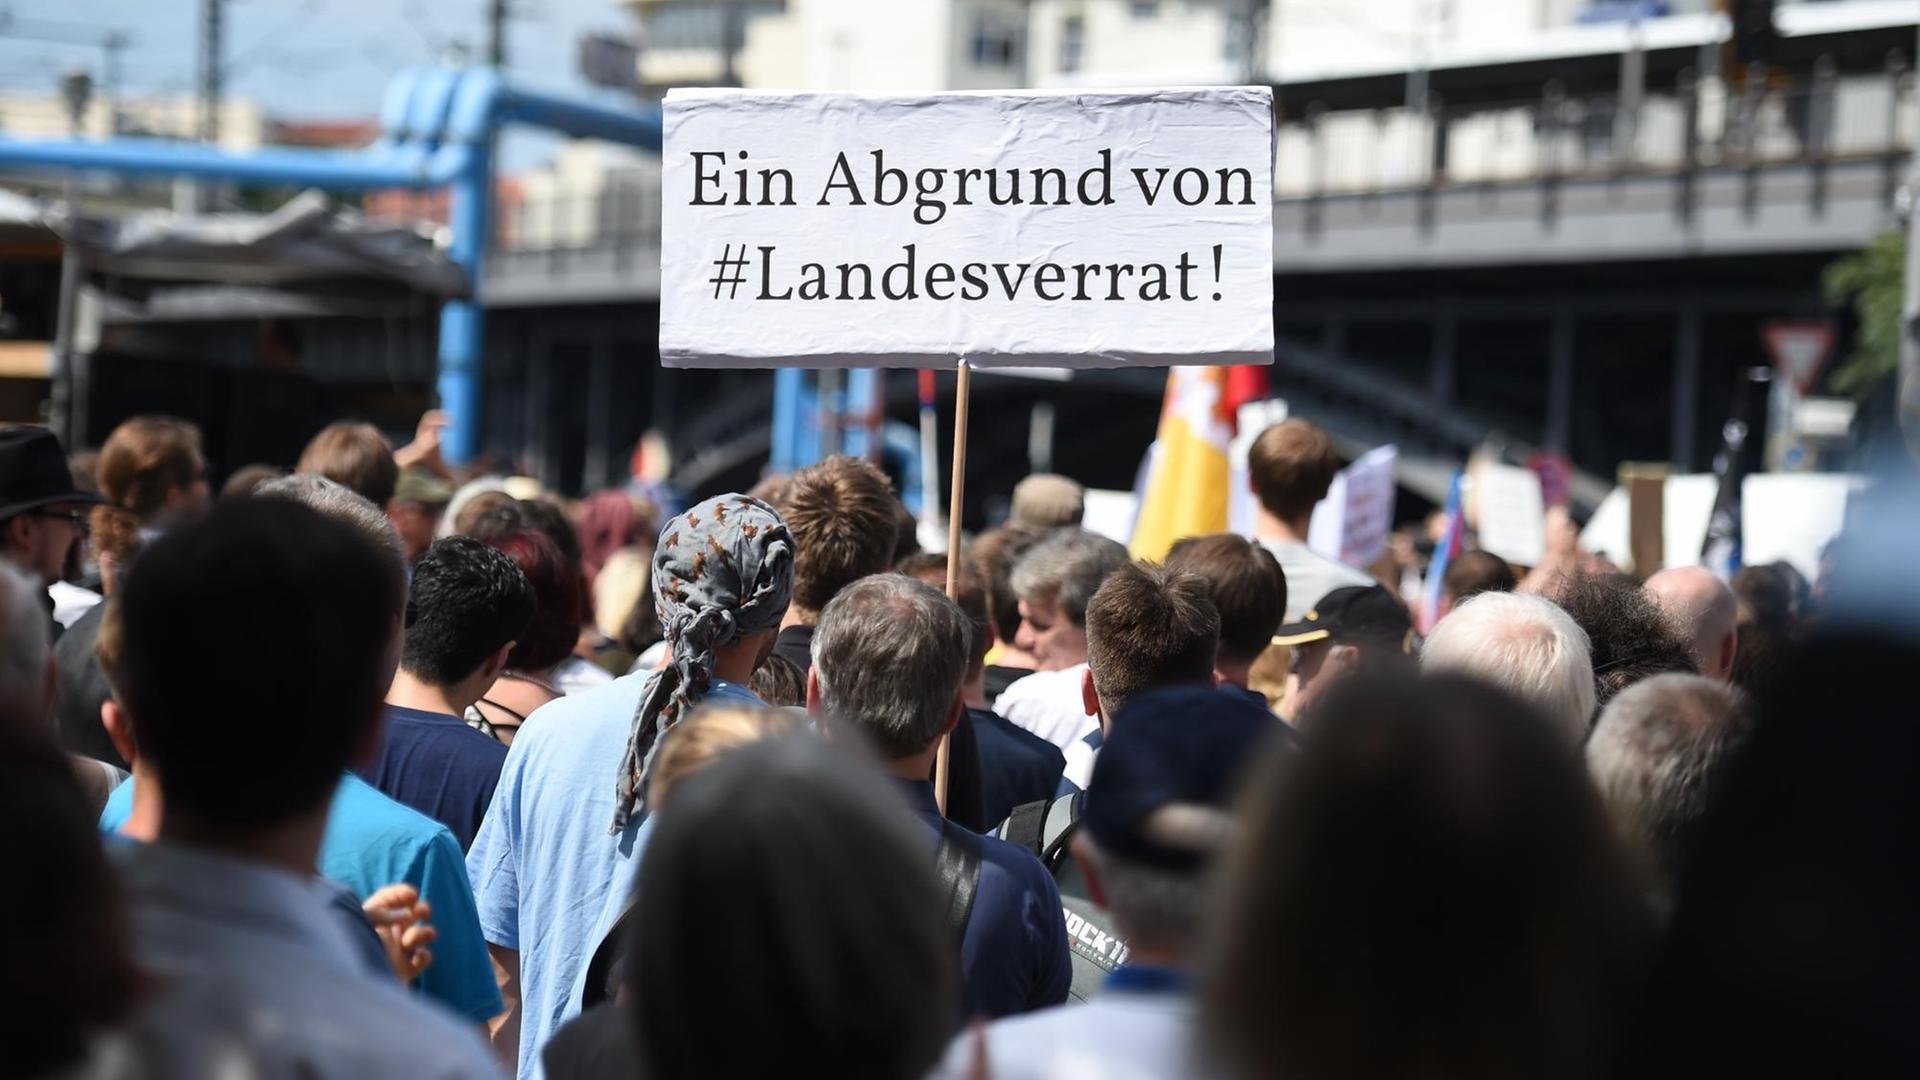 Teilnehmer einer Demonstration von Unterstützern des Internetportals Netzpolitik.org halten am 01.08.2015 in Berlin bei der Demonstration ein Schild "Ein Abgrund von #Landesverrat.!"